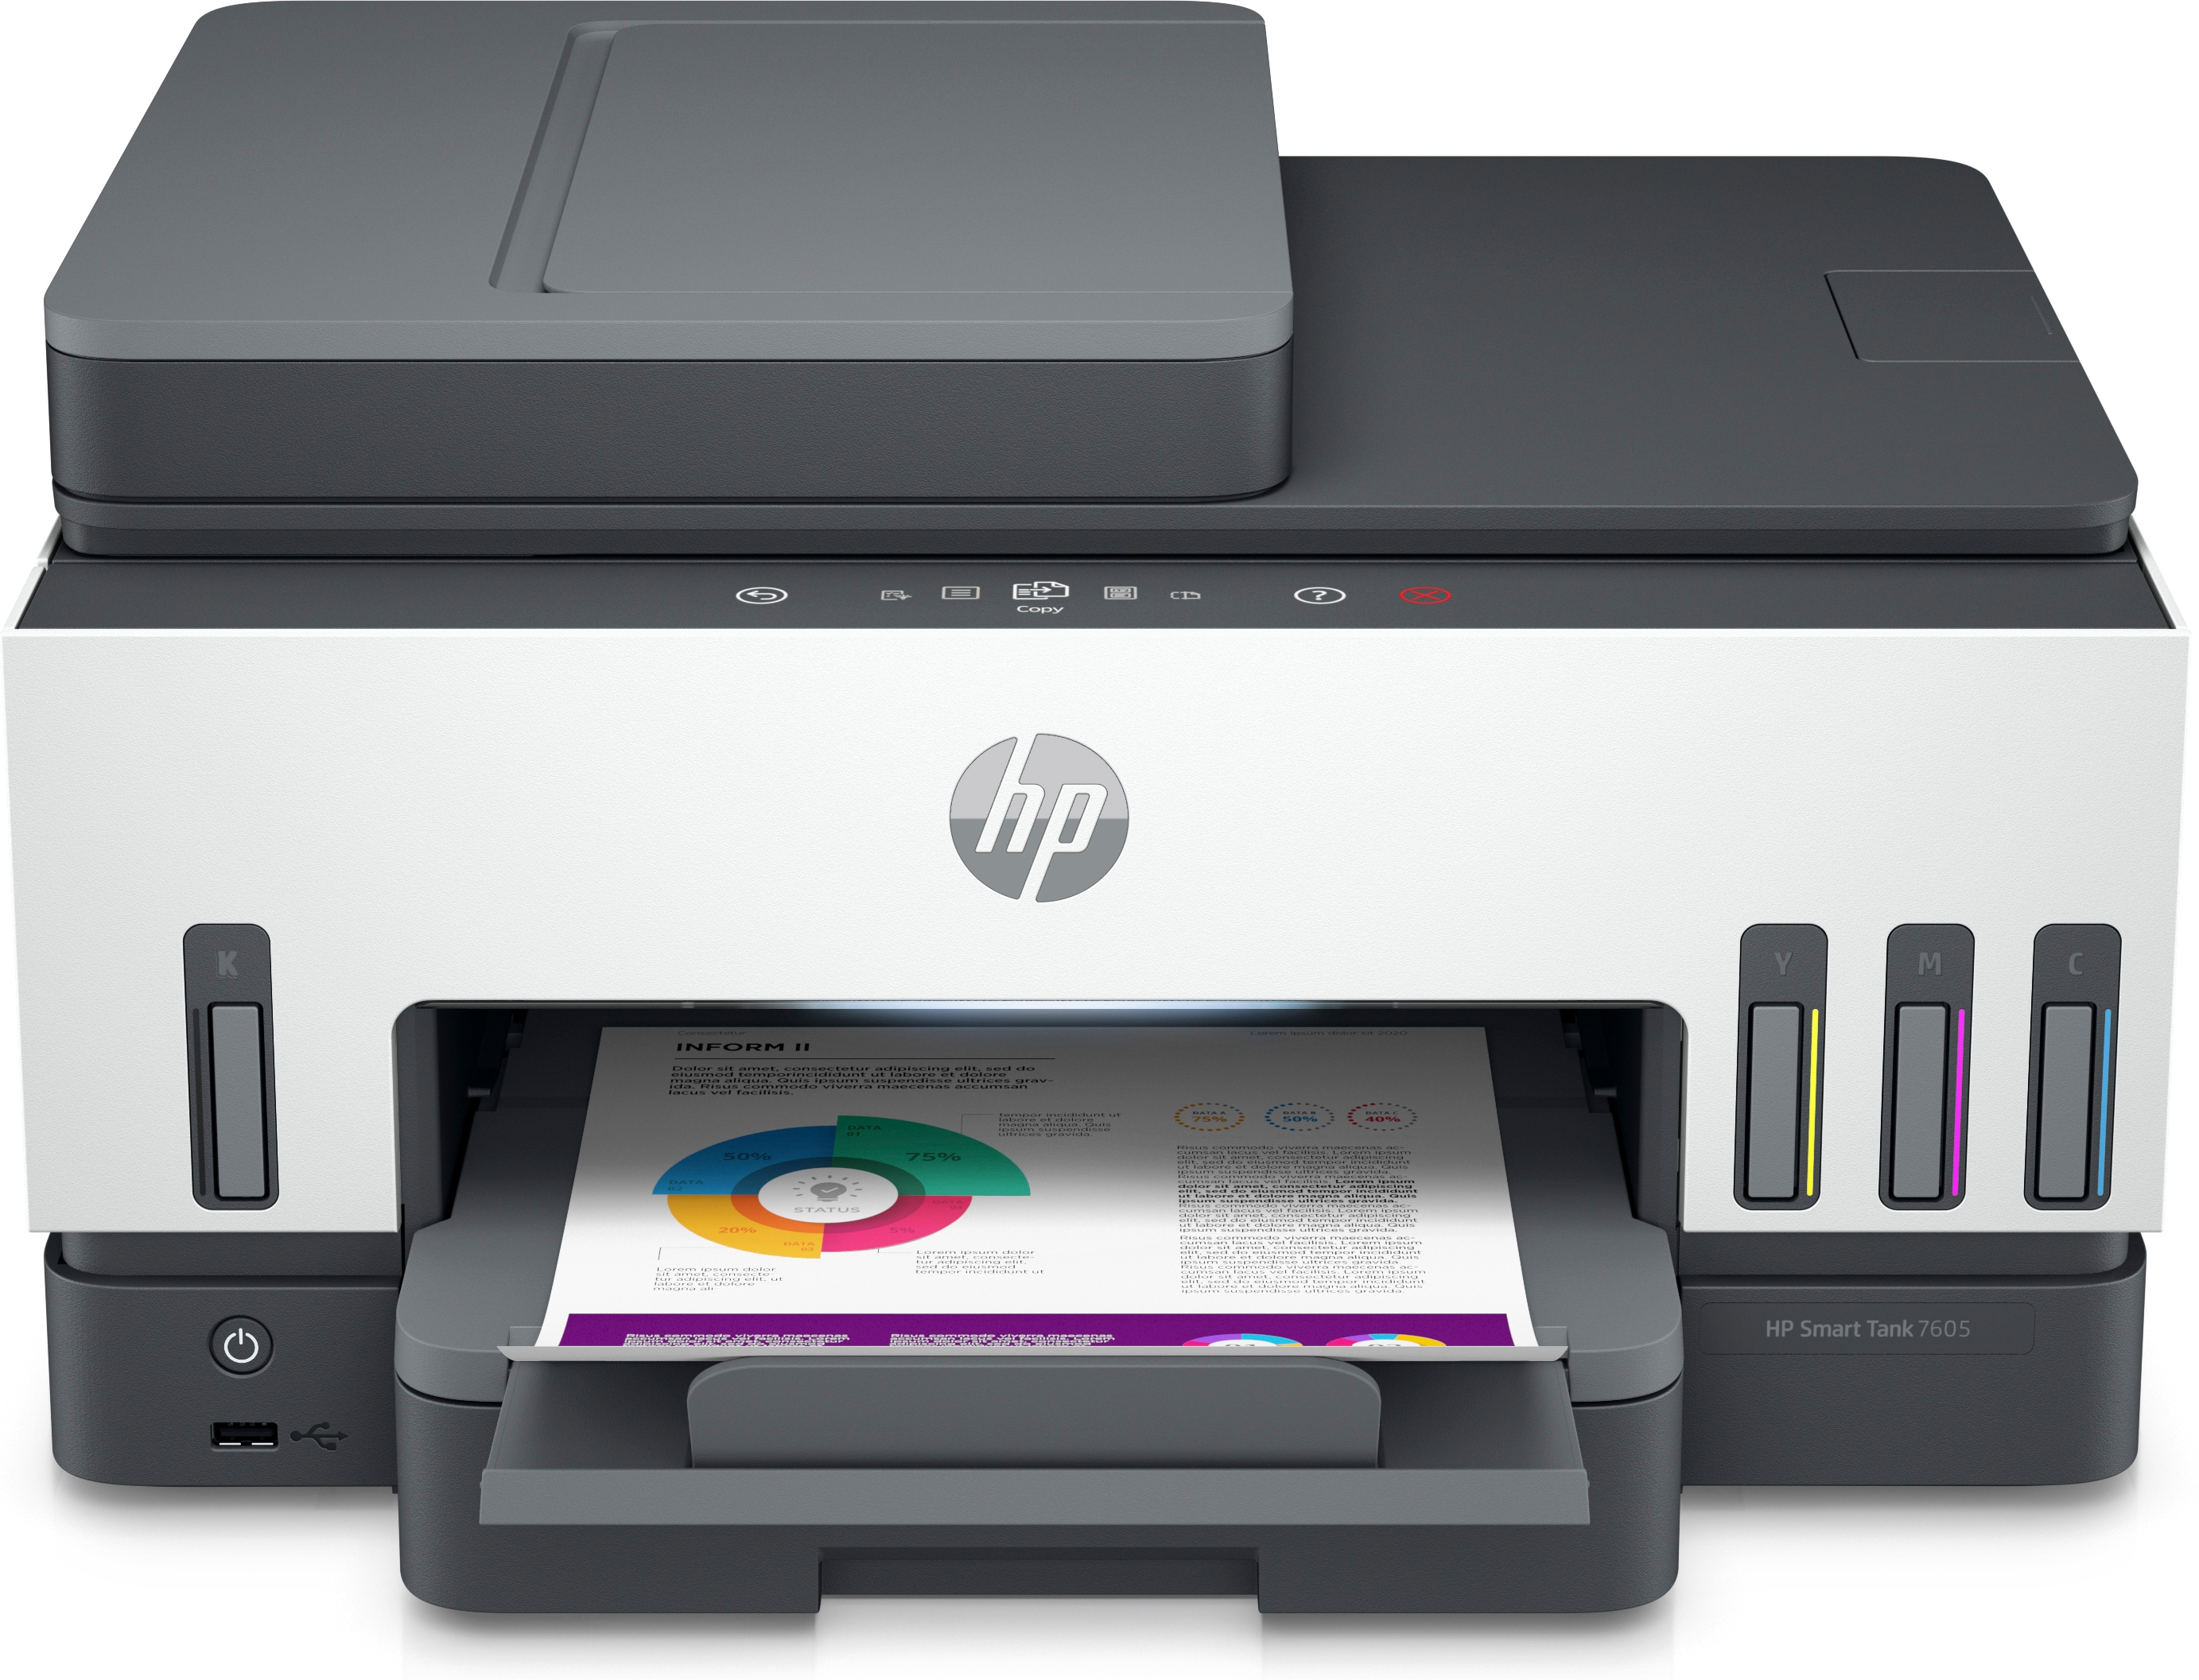 HP HP Smart Tank 7605 All-in-One, Kleur, Printer voor Thuis en thuiskantoor, Printen, kopi&#235;ren, scannen, faxen, ADF en draadloos, Invoer voor 35 vel; Scans naar pdf; Dubbelzijdig printen